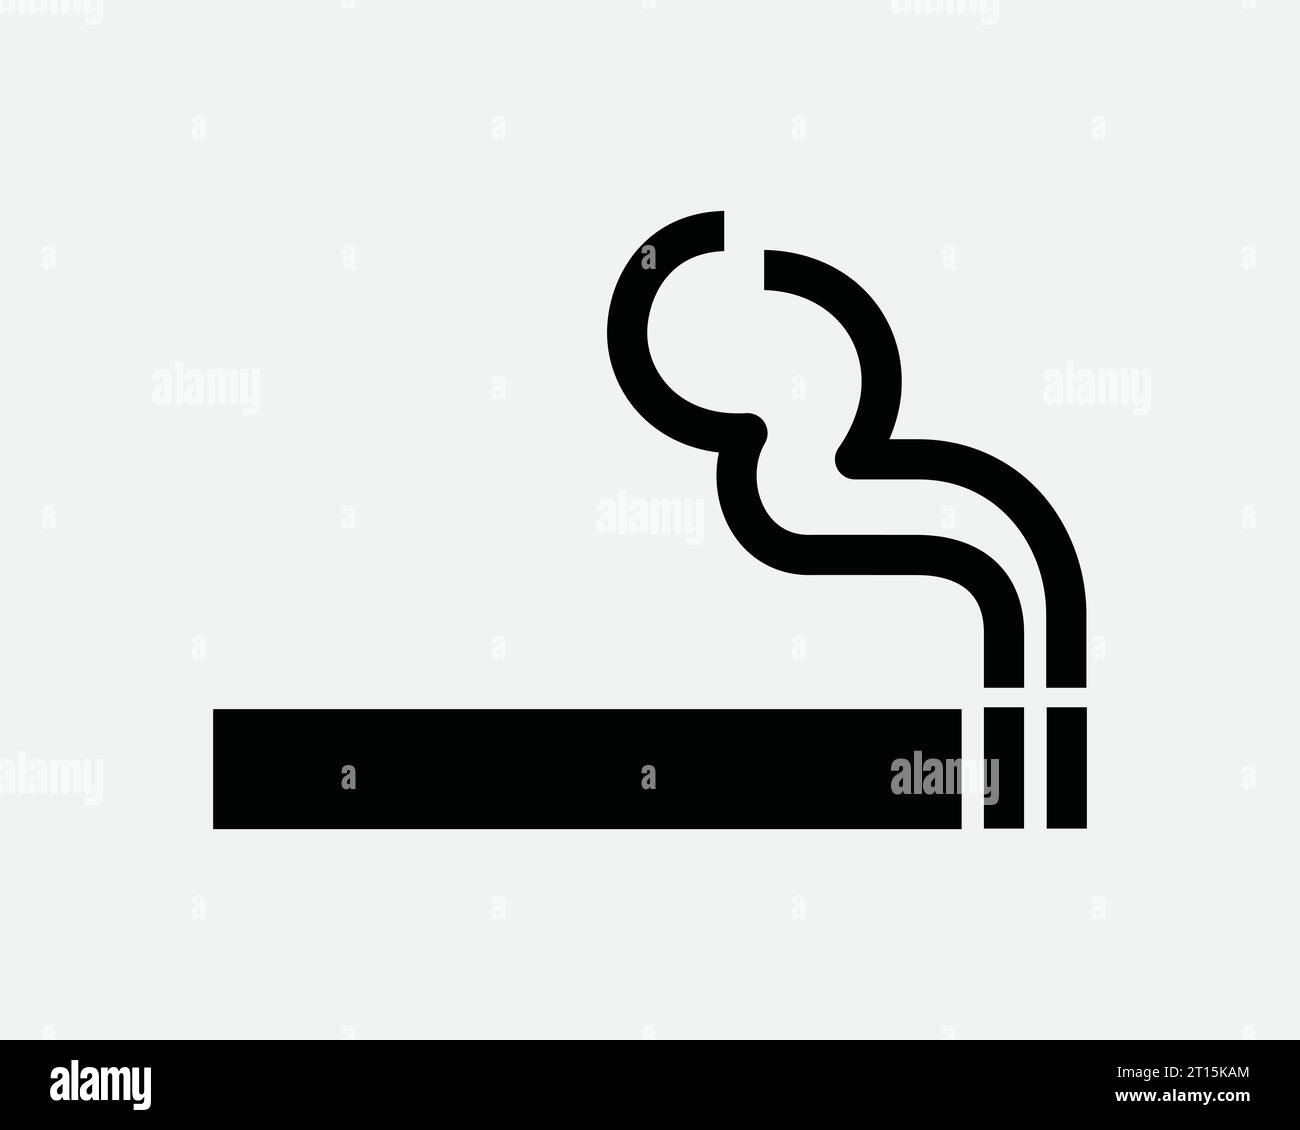 Rauchen Zeichen Symbol Zigarette Rauch Zone Vape Tabak Nikotin Zigarre Raucher Bereich Warnung Verboten Schwarz Weiß Umriss Linie Form Zeichen Symbol Vektor Stock Vektor